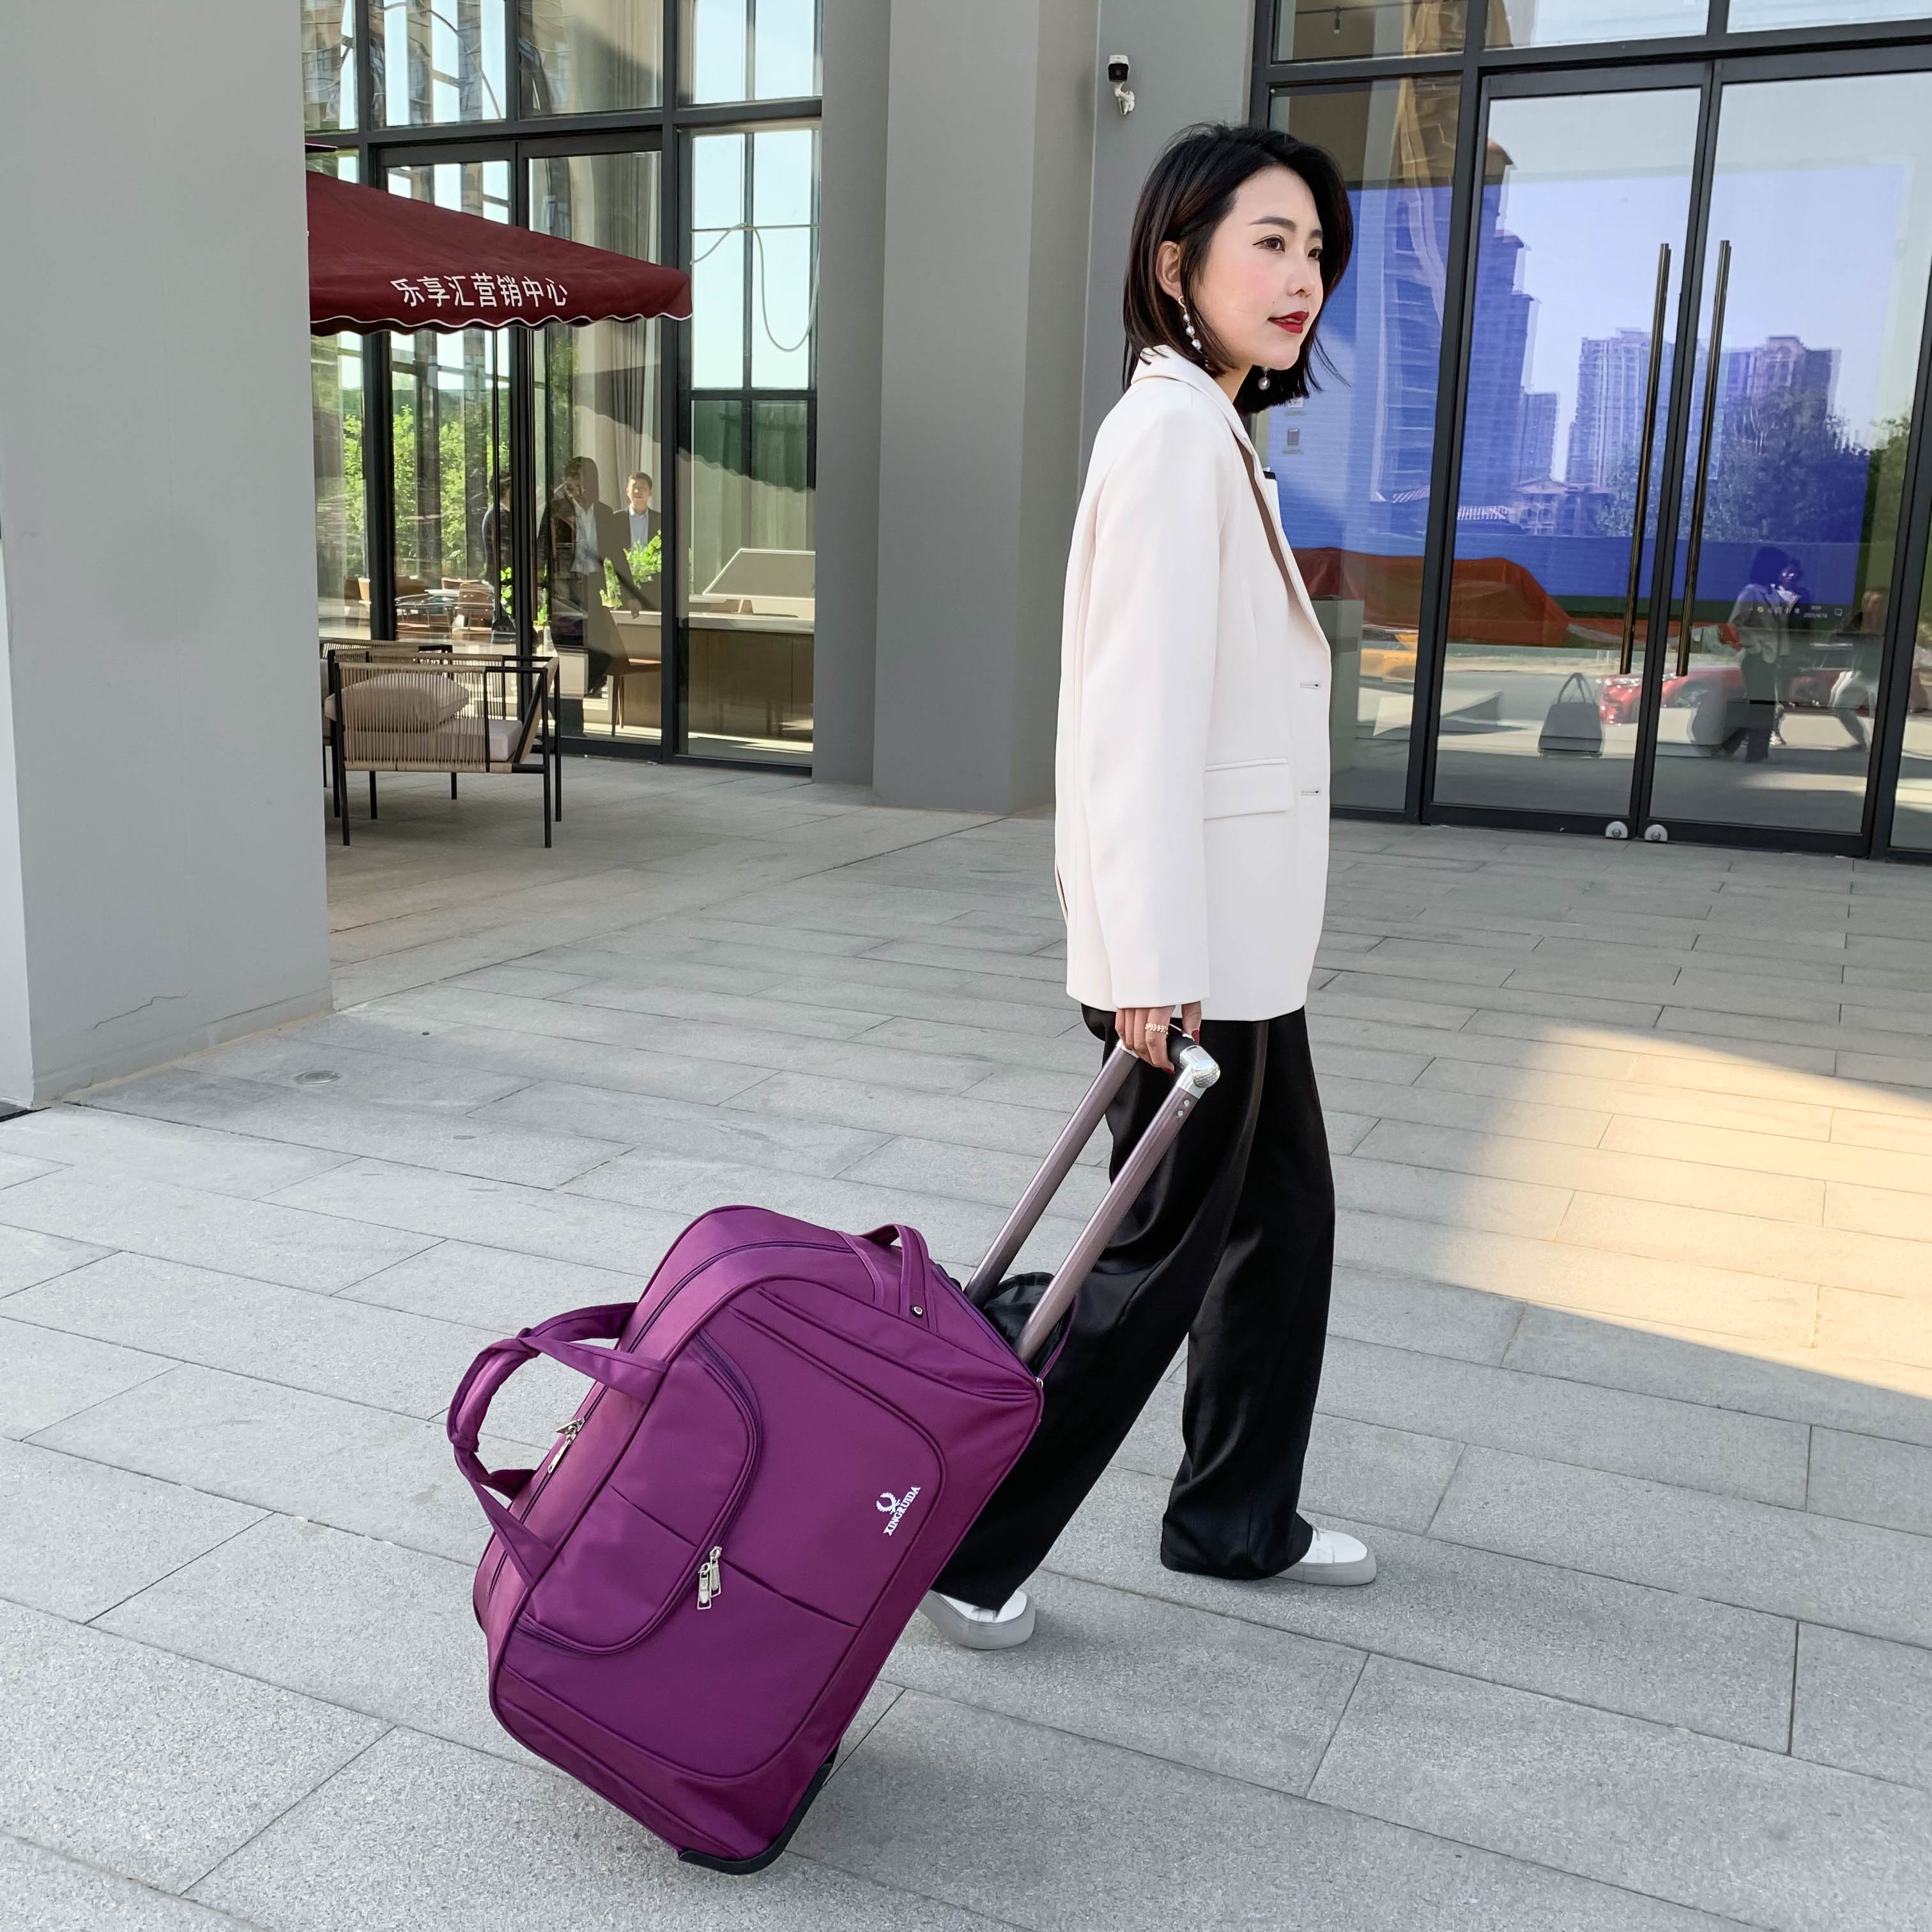 旅遊拉桿包 拉桿包旅游手提旅行袋大容量行李包登機提包可折疊旅行包歐美時尚【MJ192949】